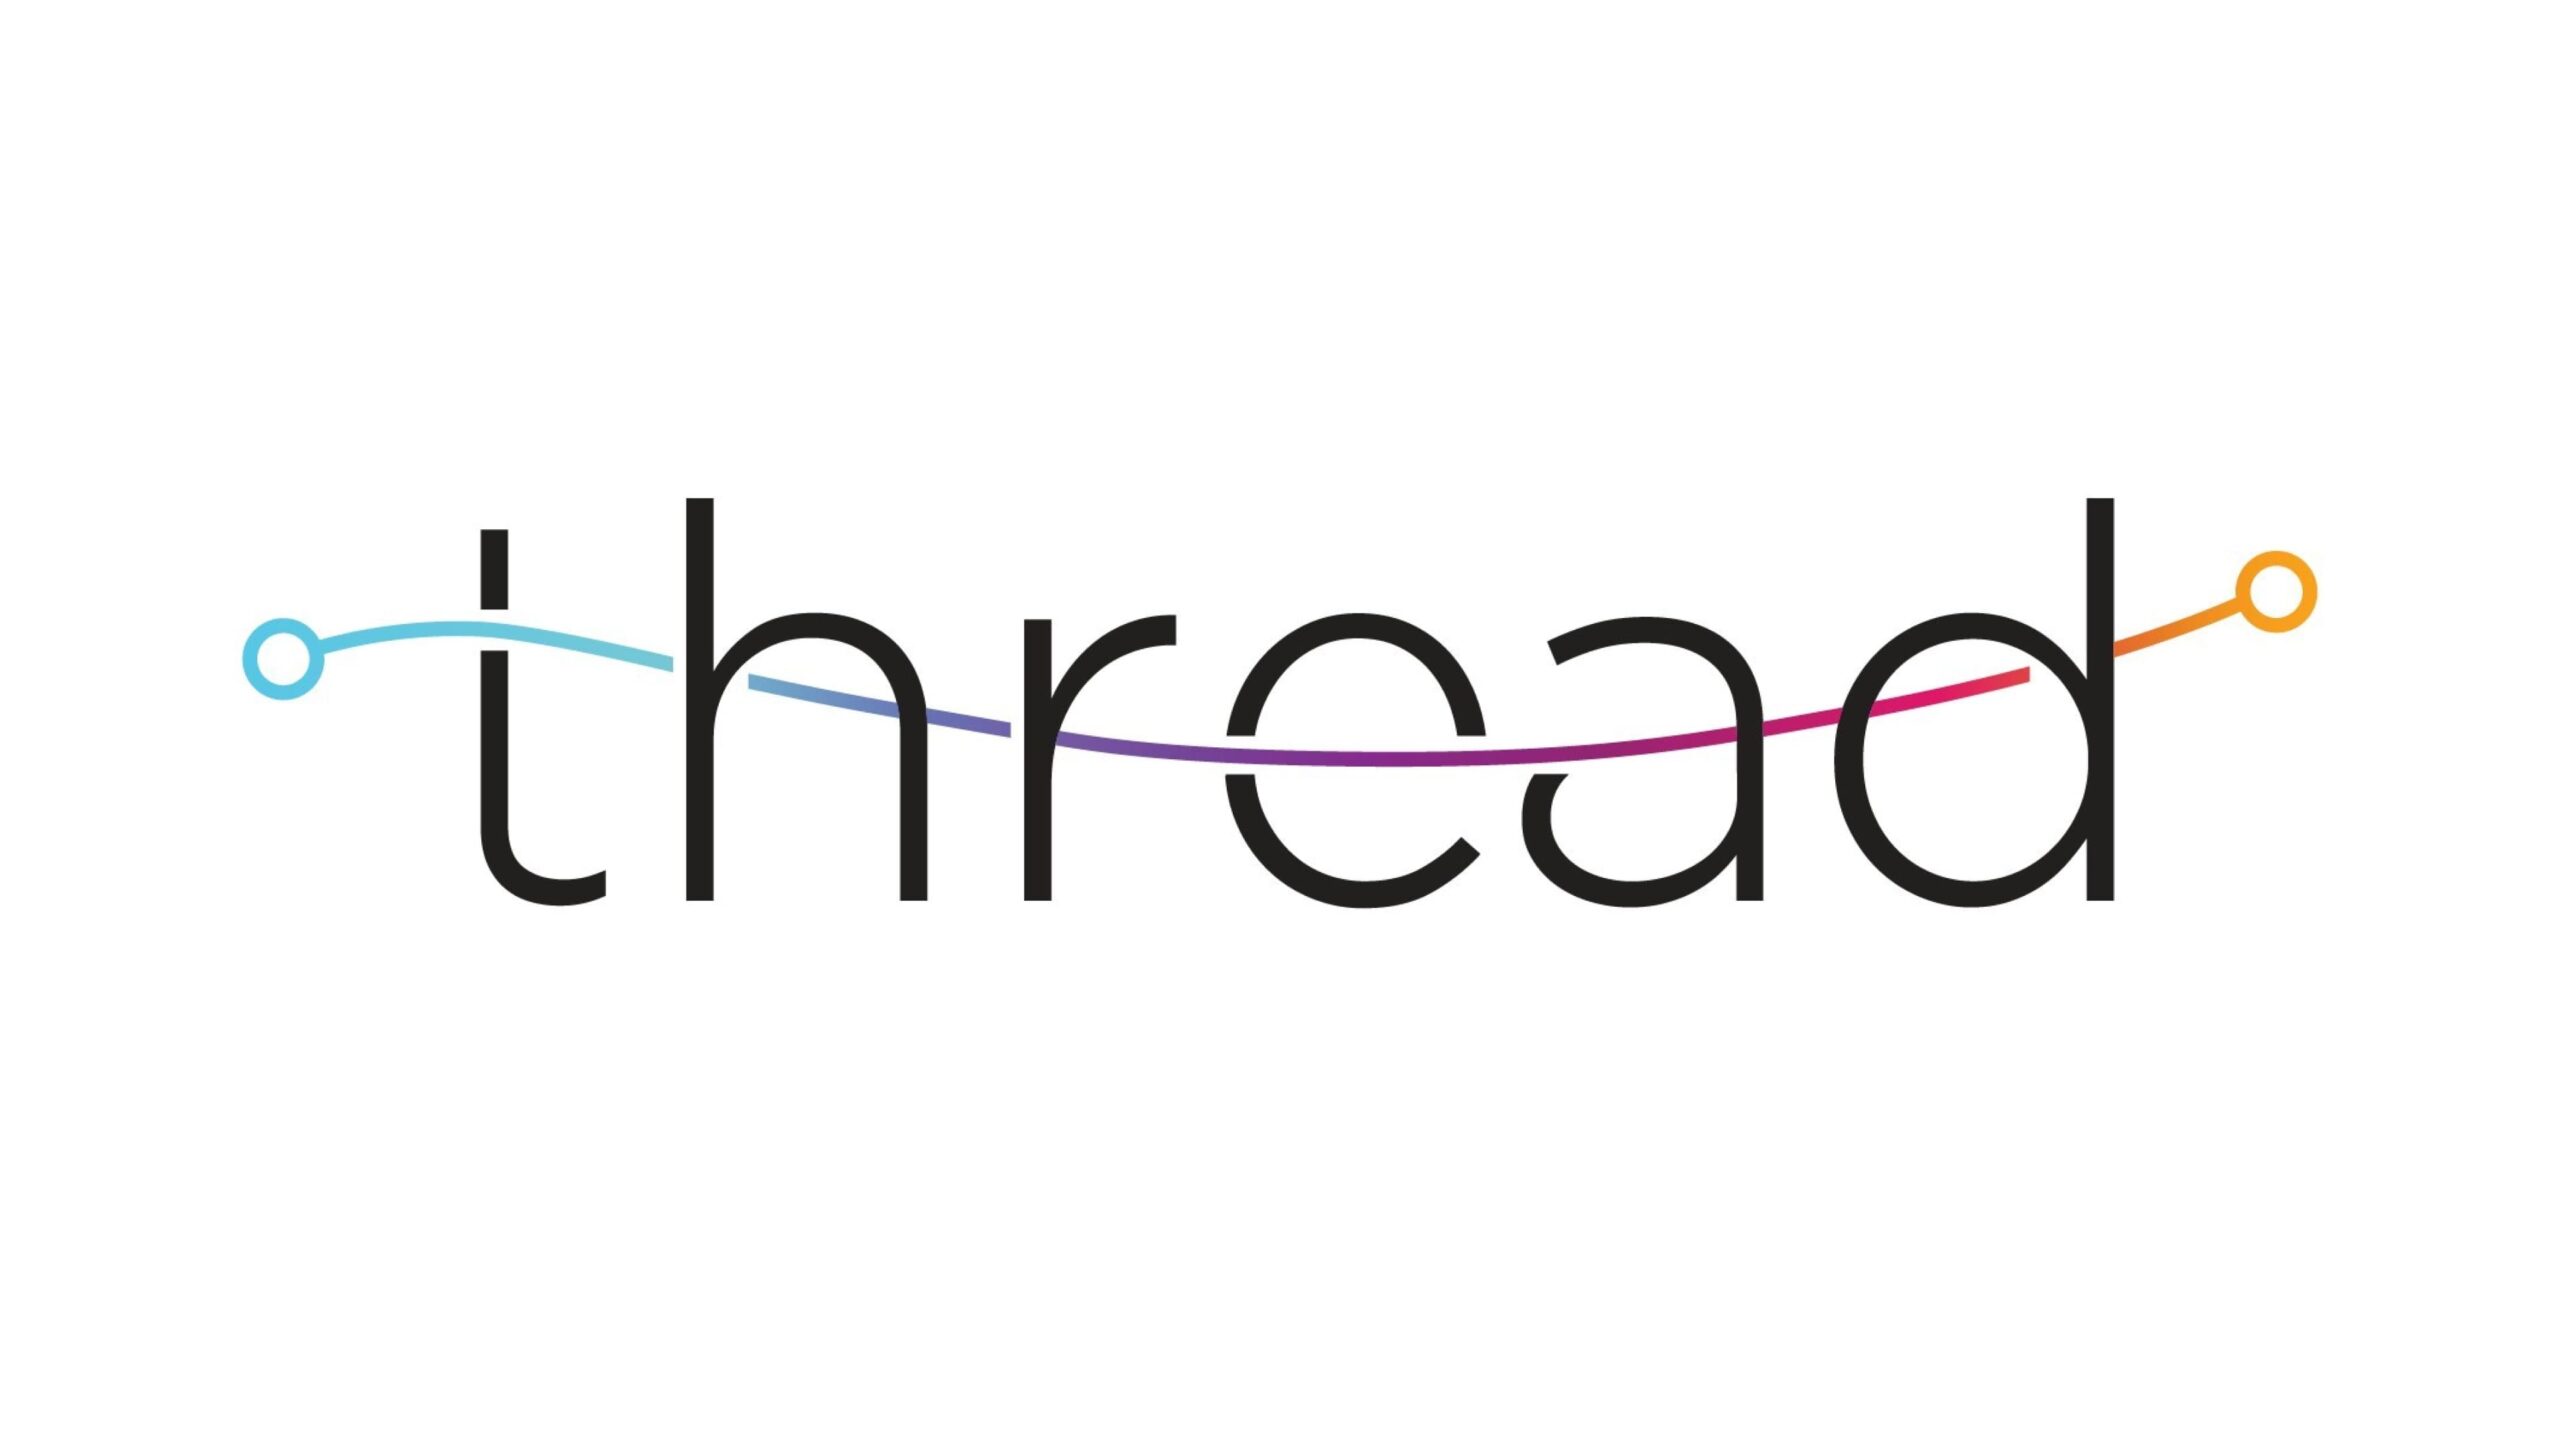 公共施設の資産を自律的に検査するプラットフォームを開発するThreadが1,500万ドルを調達